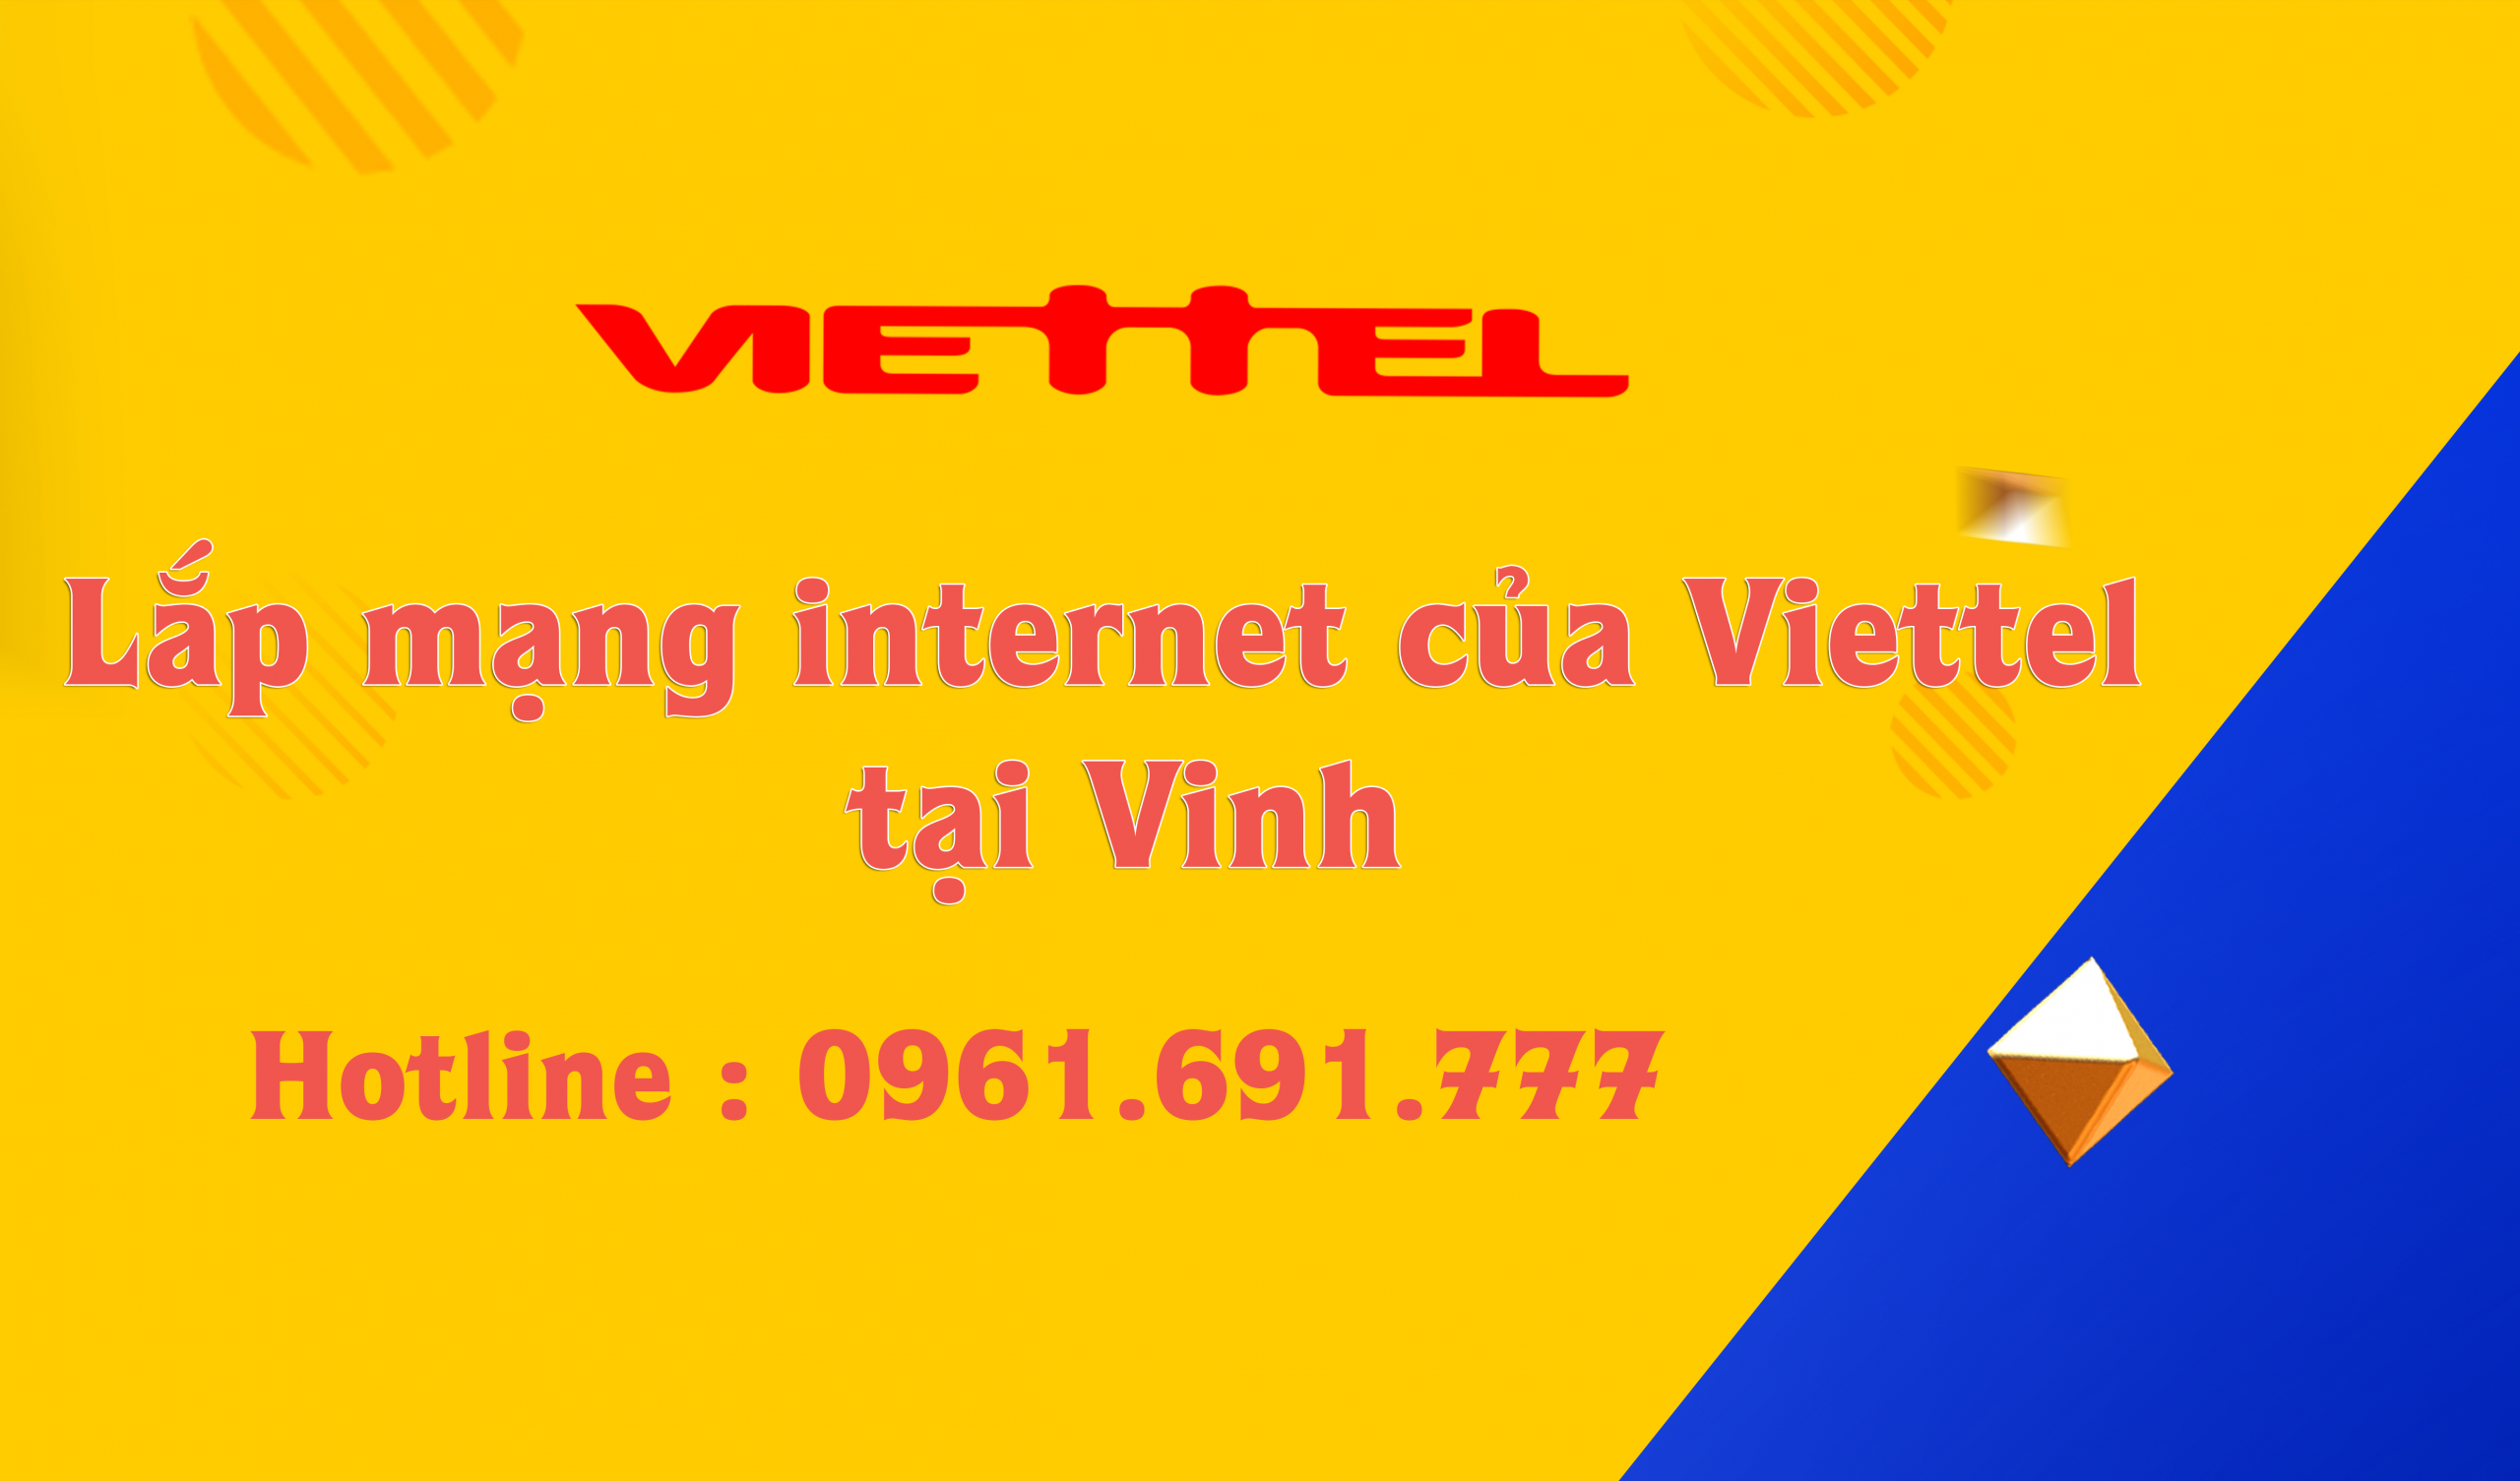 Lắp mạng internet của Viettel tại Vinh